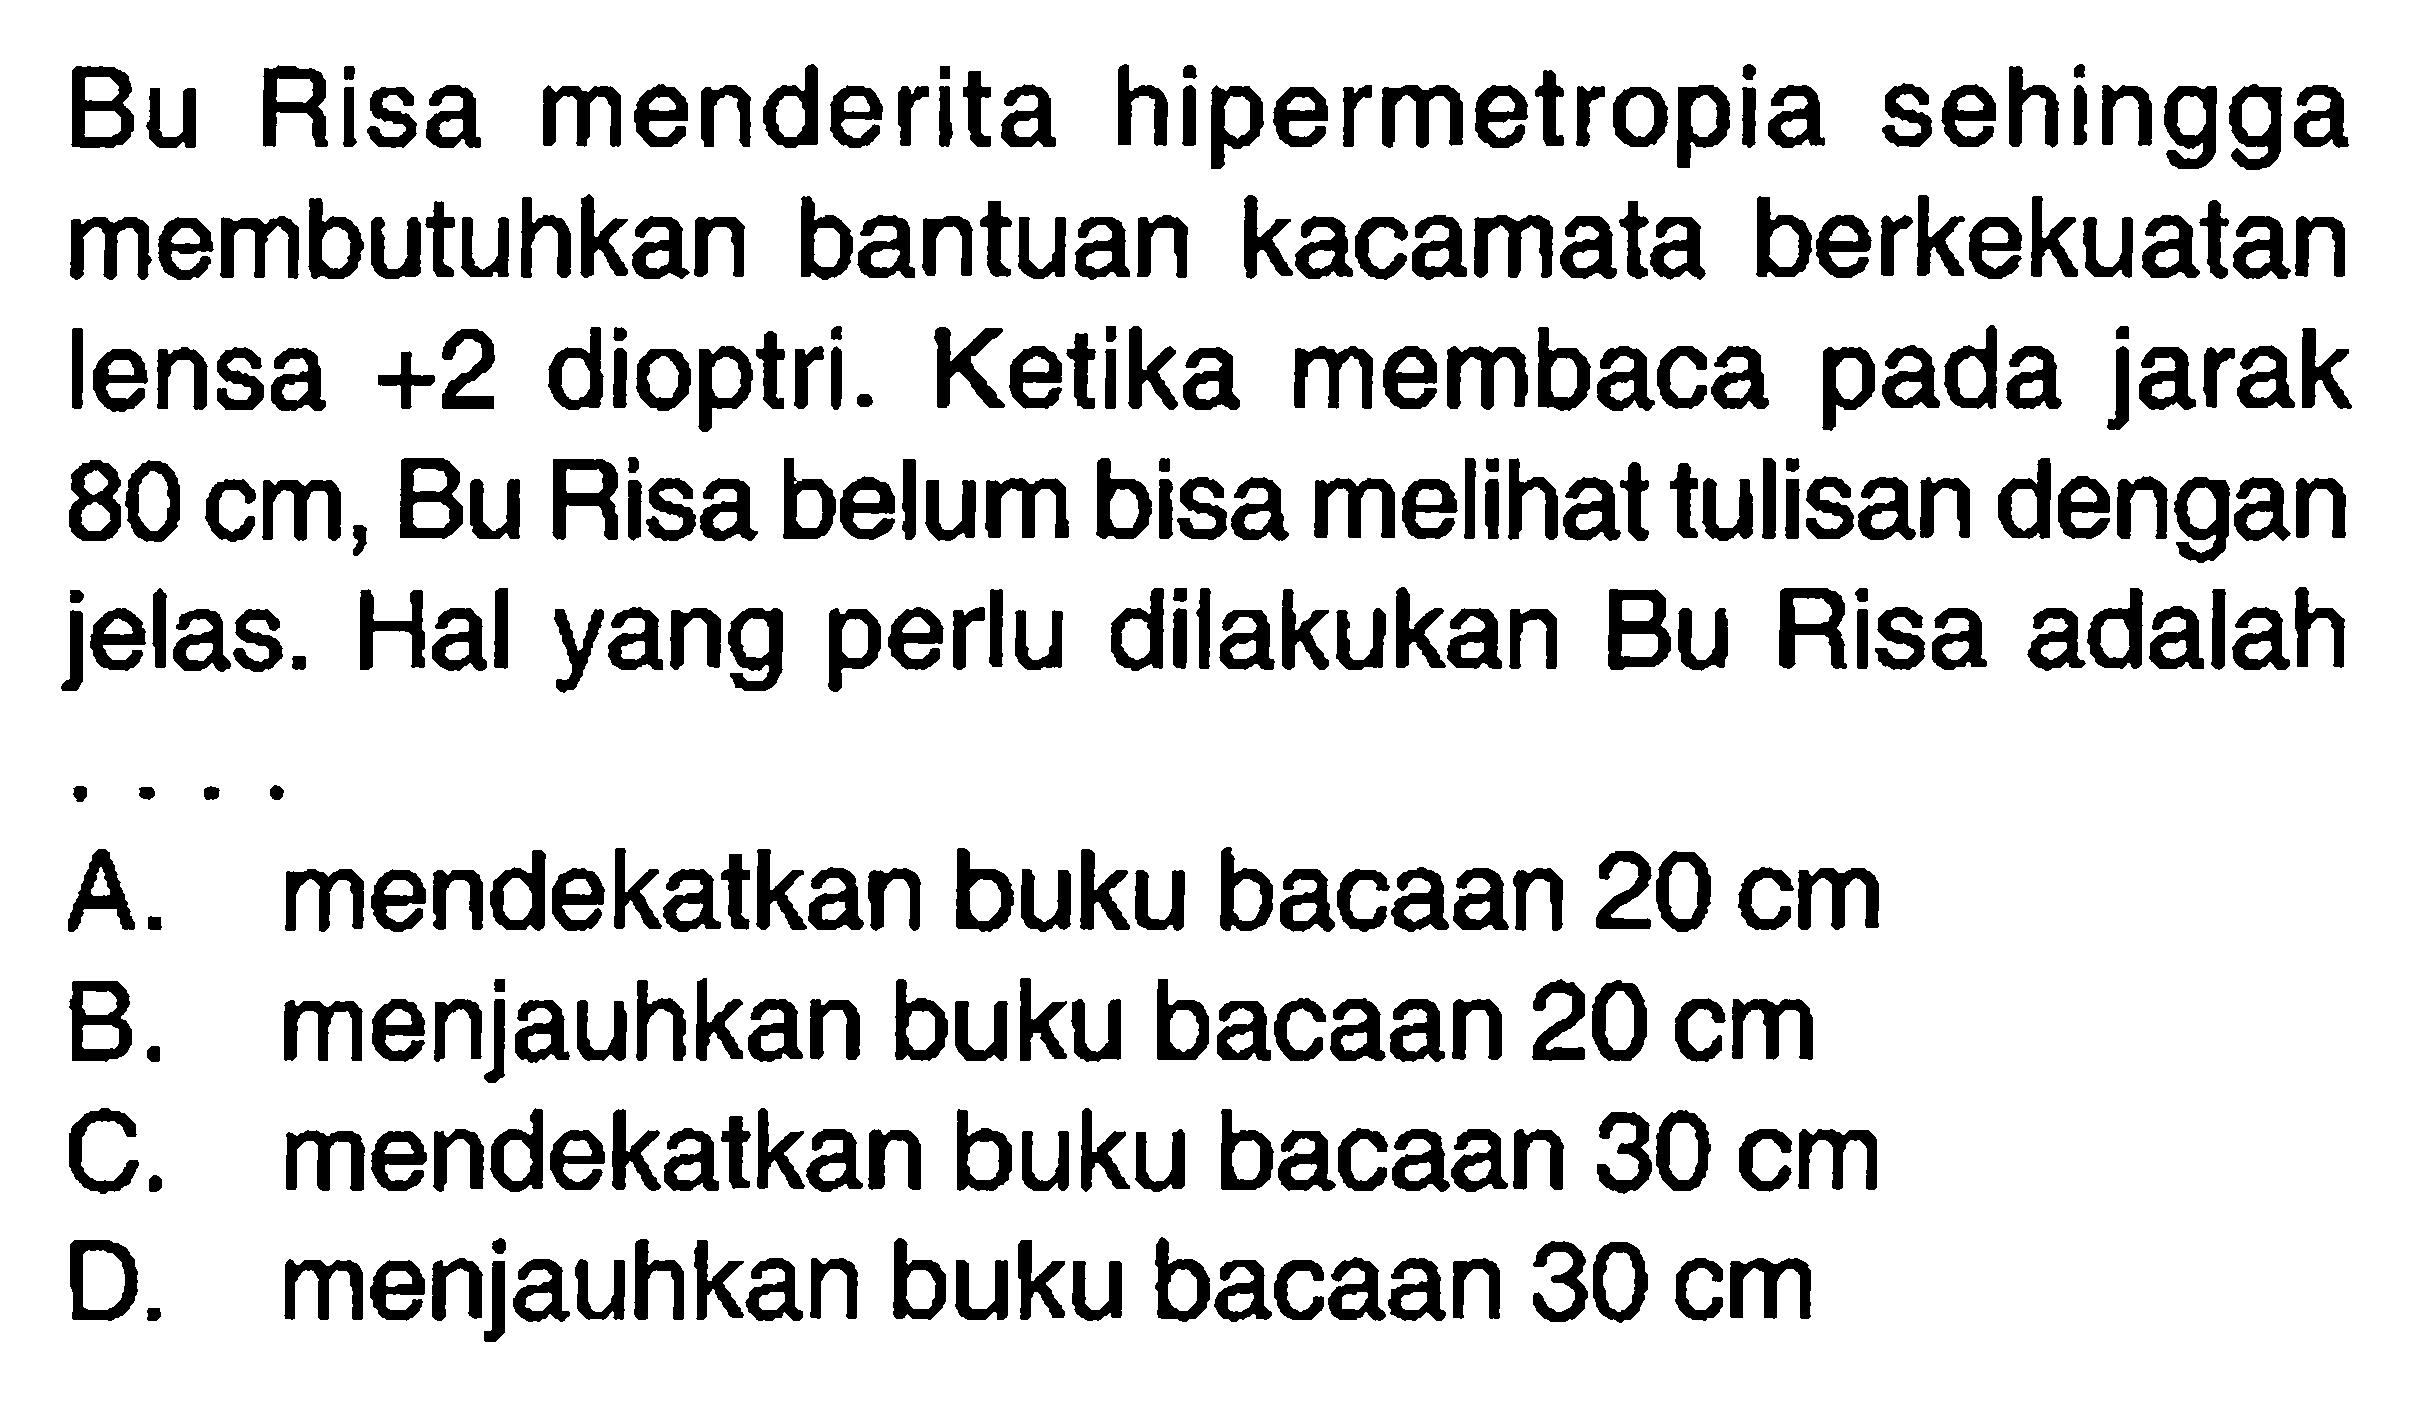 Bu Risa menderita hipermetropia sehingga membutuhkan bantuan kacamata berkekuatan lensa +2 dioptri. Ketika membaca pada jarak 80 cm, Bu Risa belum bisa melihat tulisan dengan jelas. Hal yang perlu dilakukan Bu Risa adalah....